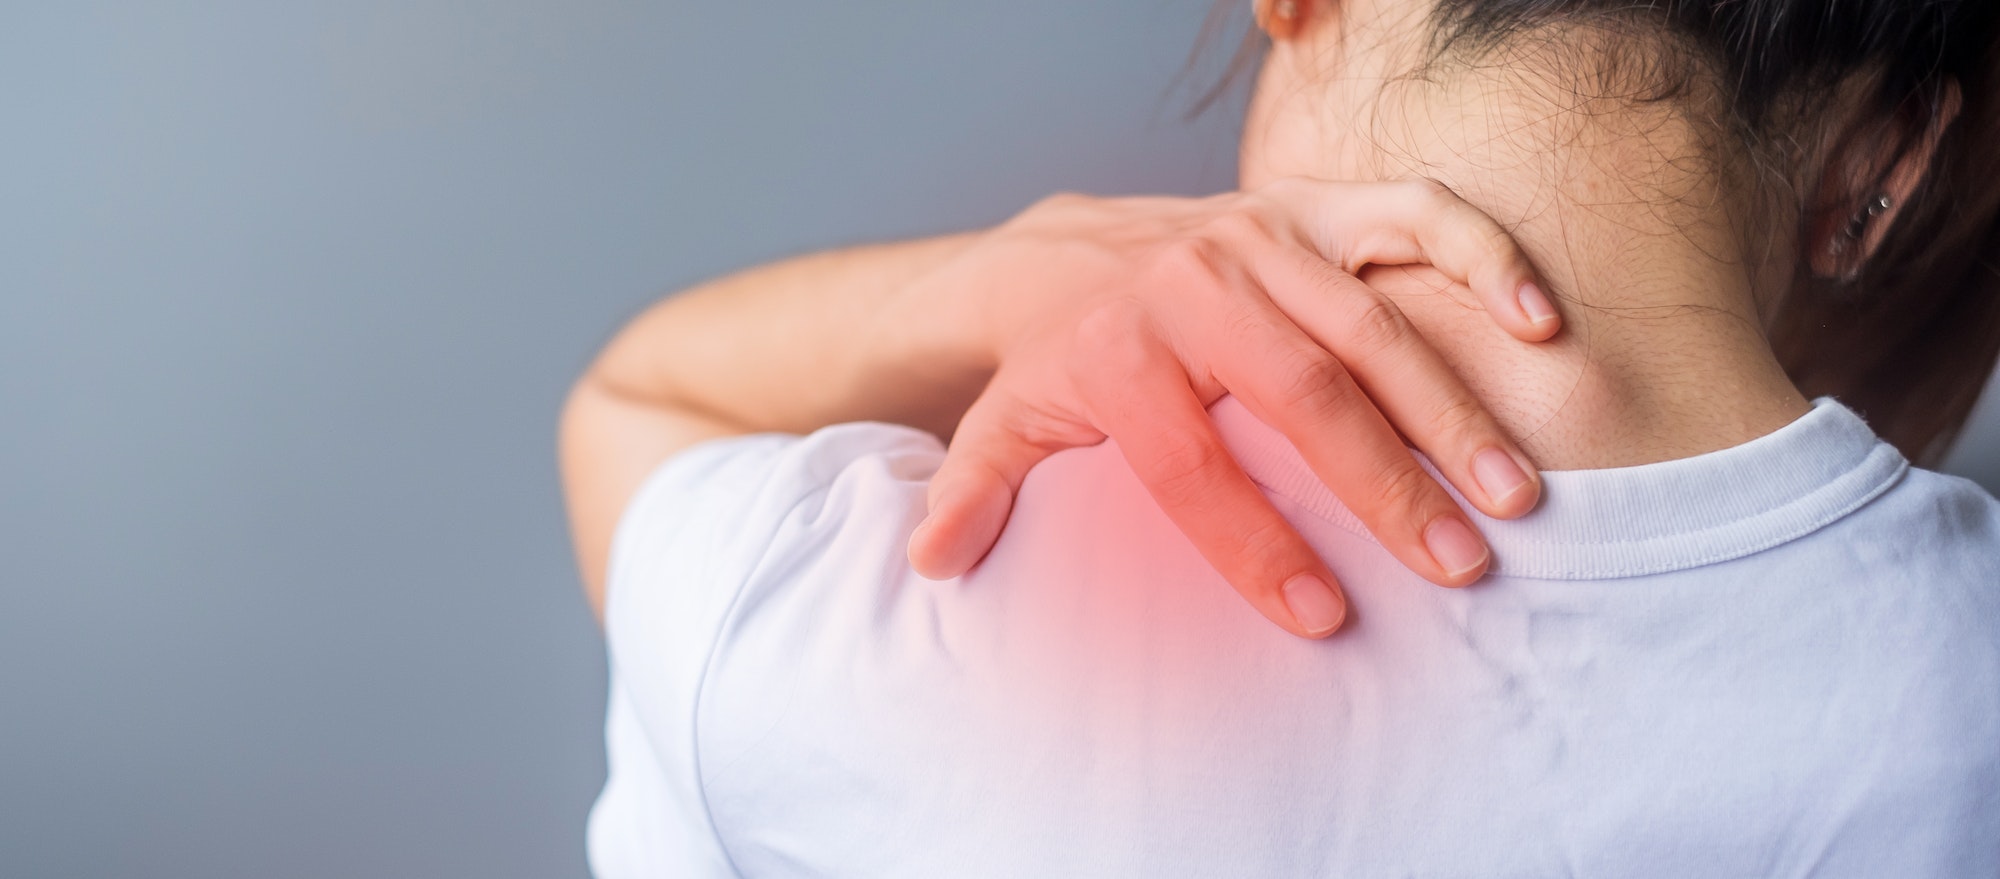 Lire la suite à propos de l’article “Disparition d’une douleur de l’épaule grâce à votre Ostéopathe c’est possible !”